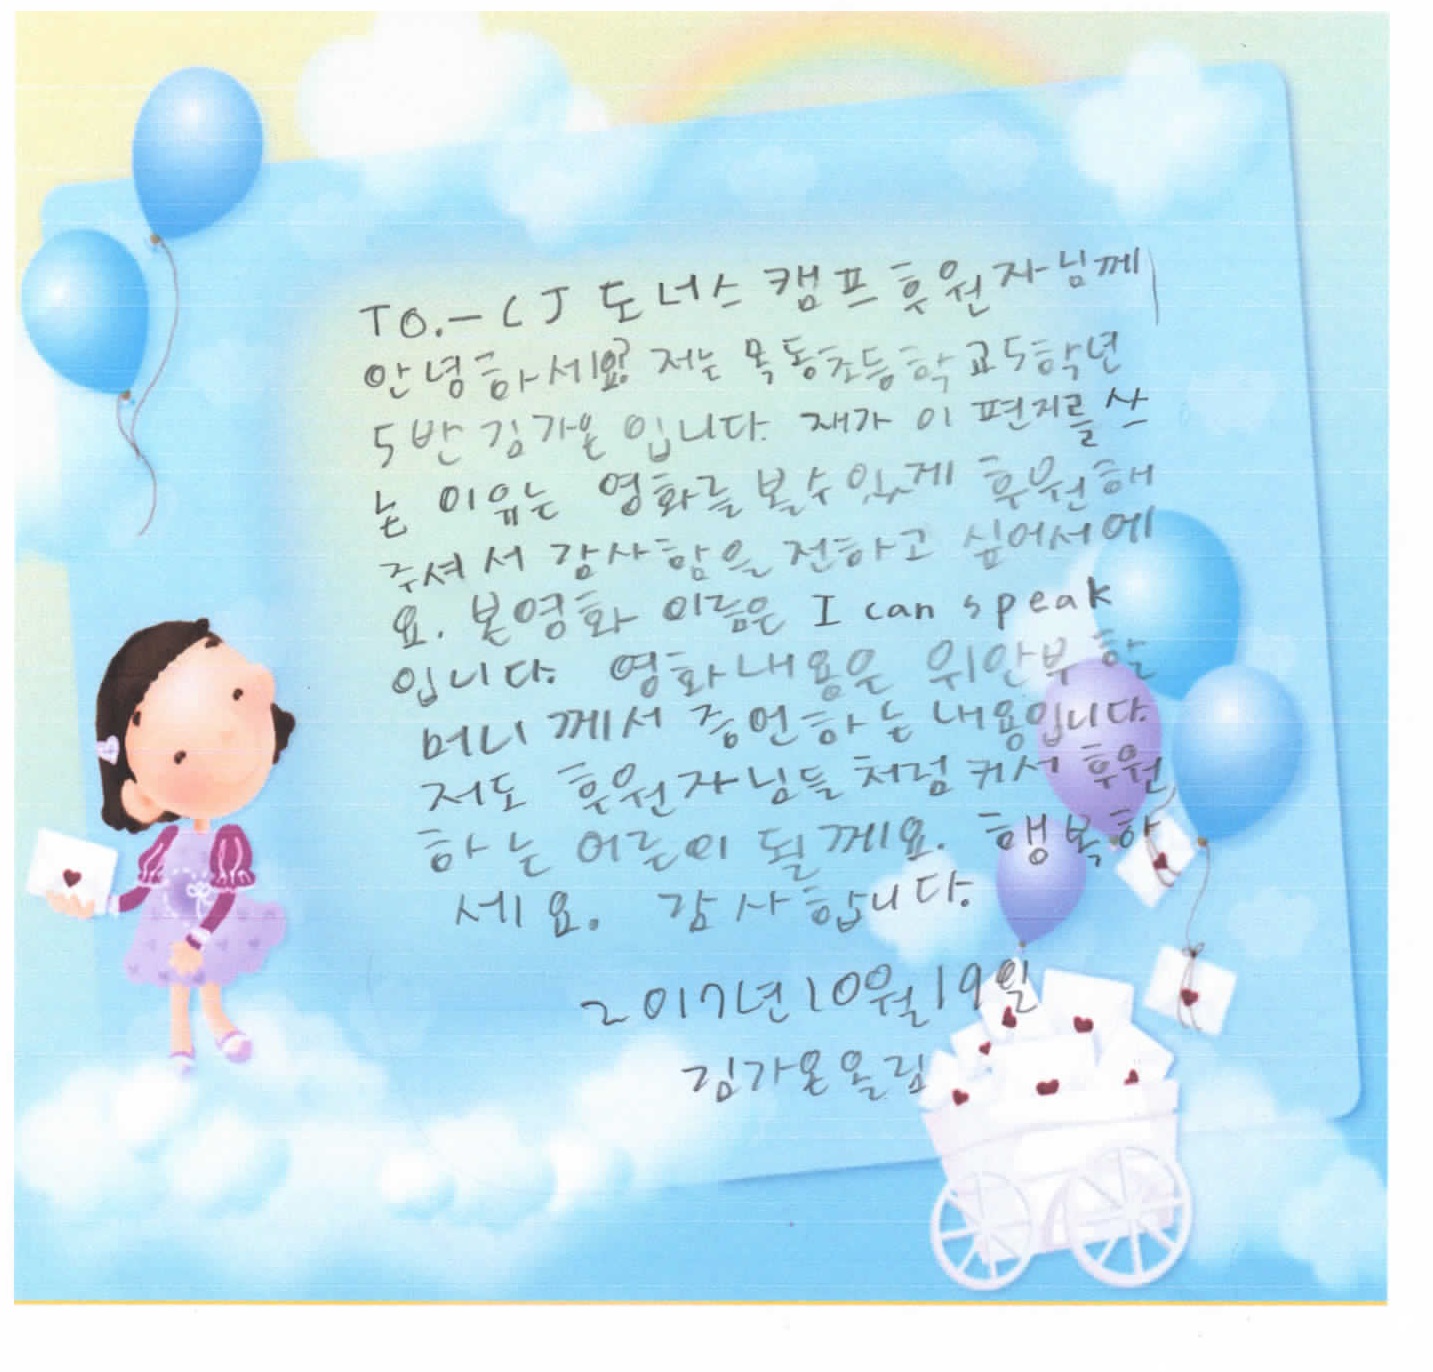 5학년 김가온의 감사편지입니다.